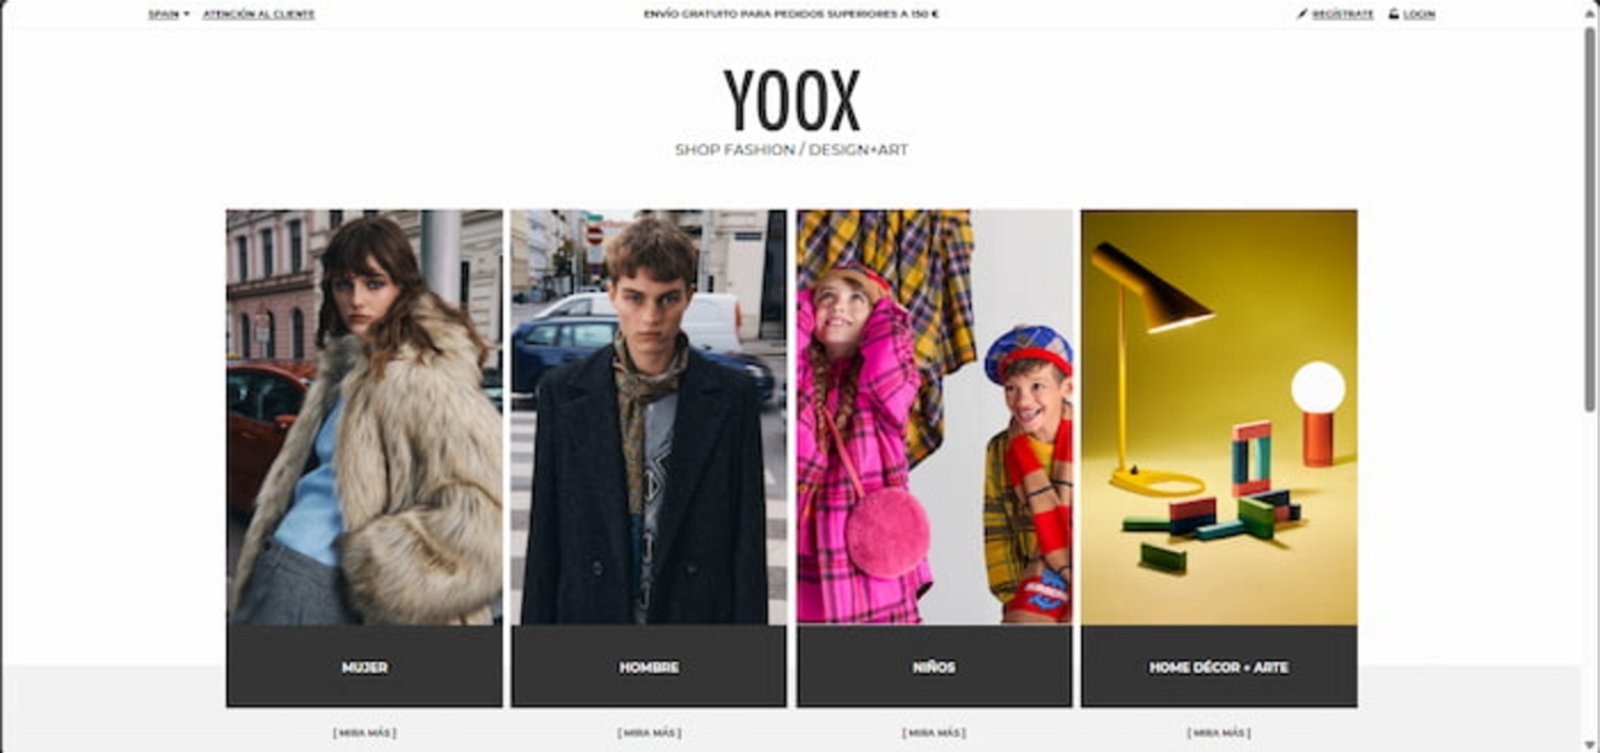 Yoox es una de las plataformas más exclusivas para comprar ropa de marca y con precios difíciles de superar